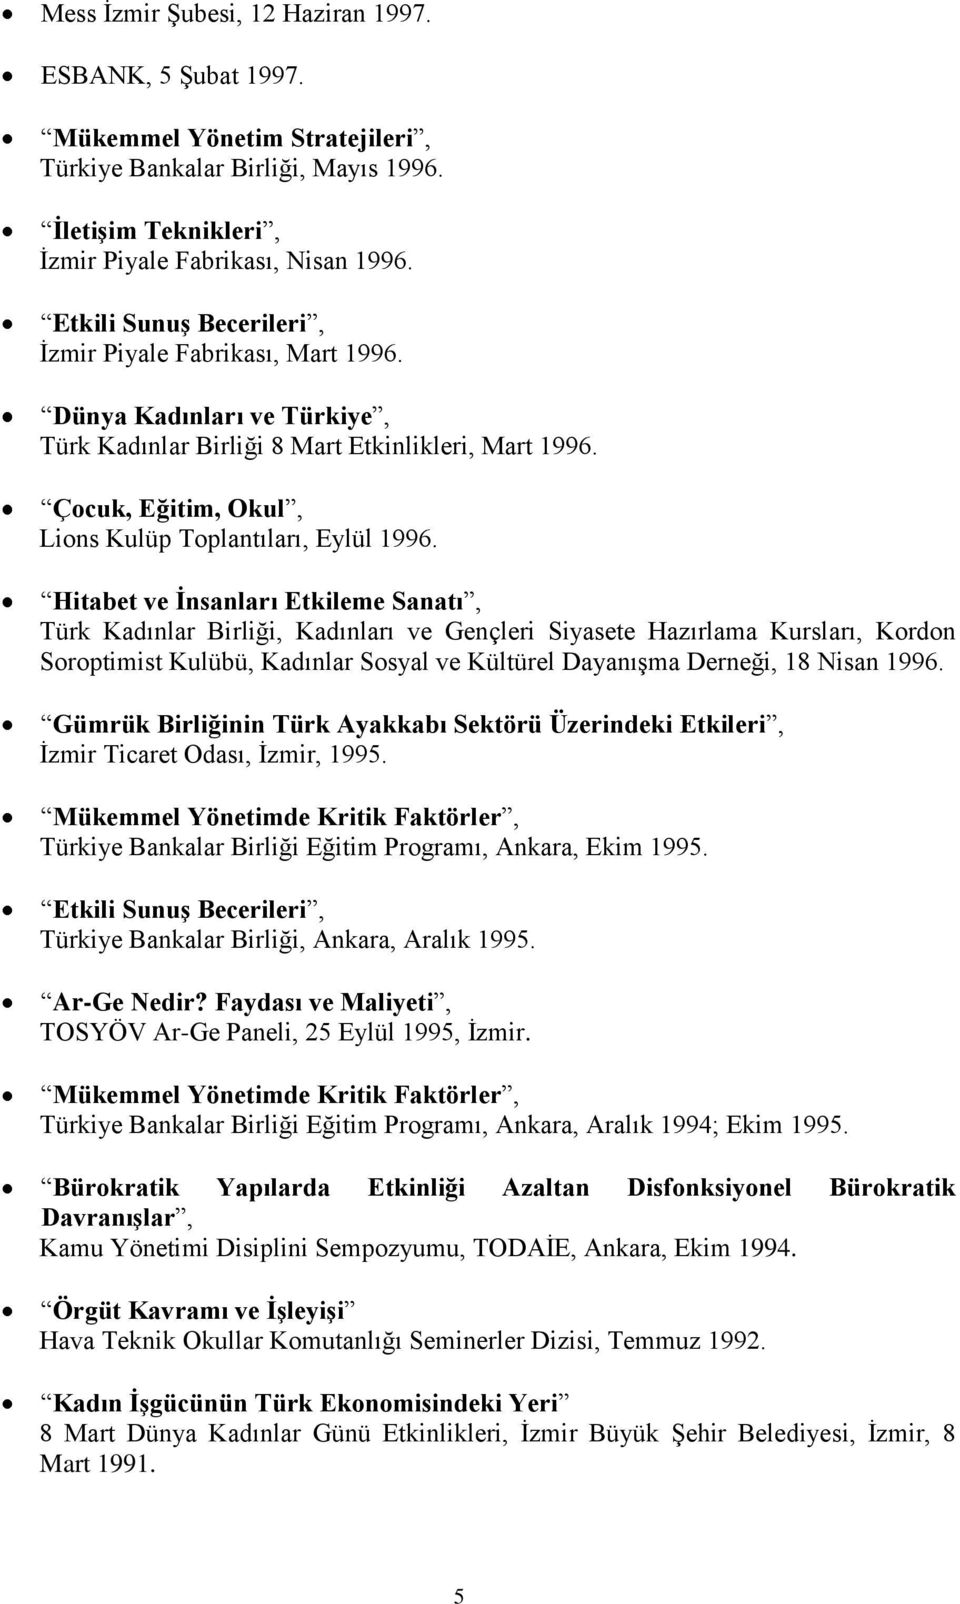 Hitabet ve Ġnsanları Etkileme Sanatı, Türk Kadınlar Birliği, Kadınları ve Gençleri Siyasete Hazırlama Kursları, Kordon Soroptimist Kulübü, Kadınlar Sosyal ve Kültürel Dayanışma Derneği, 18 Nisan 1996.